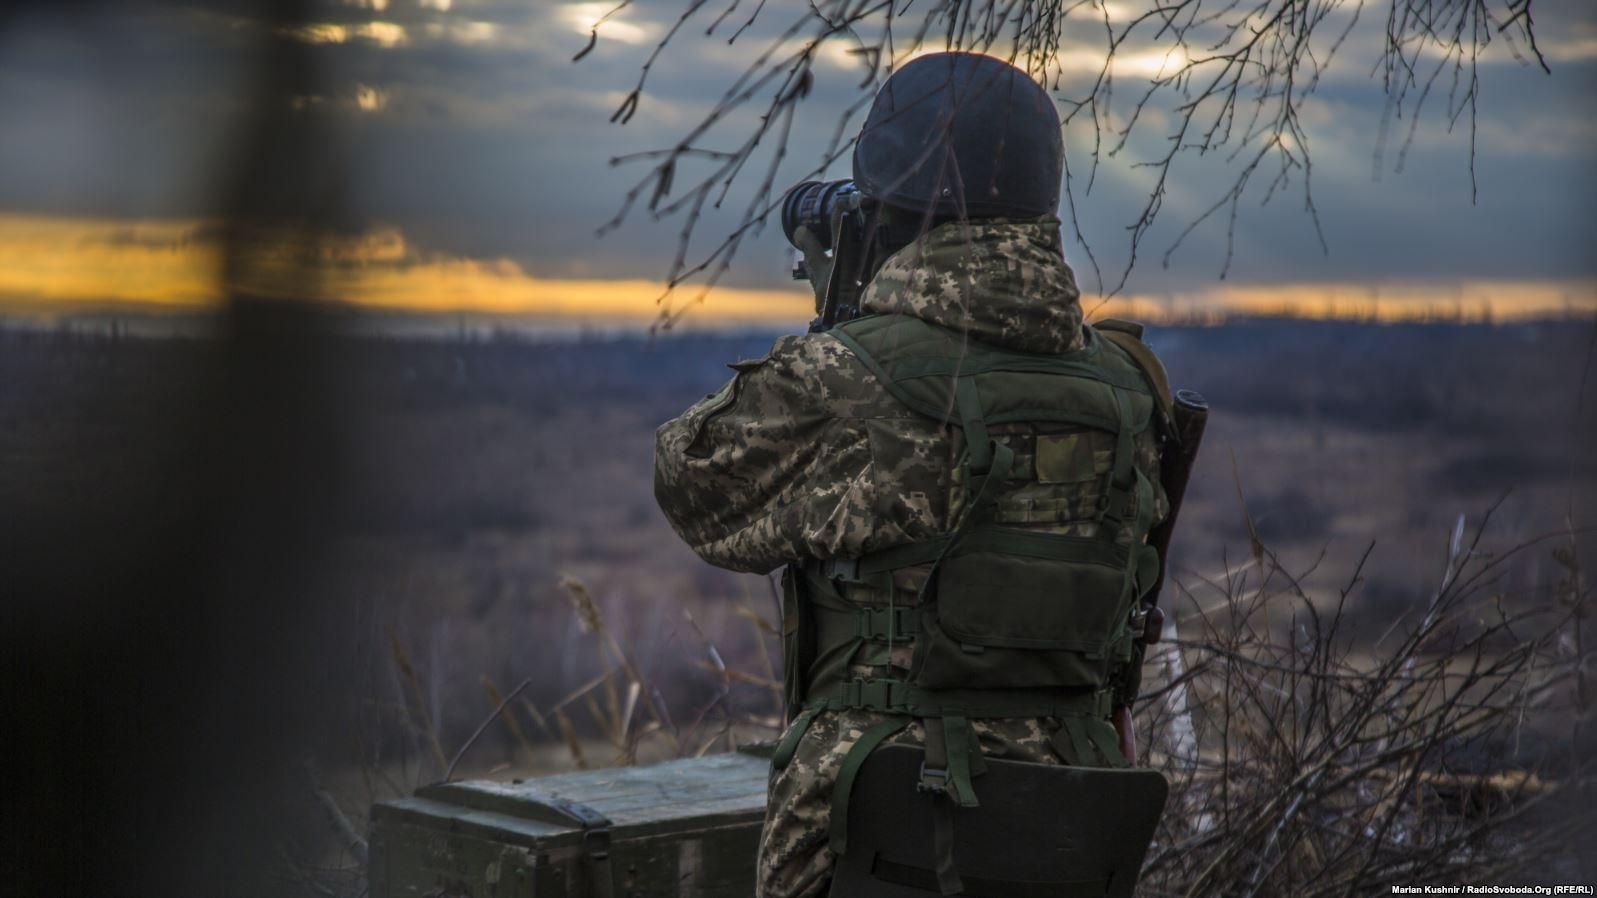 На Донбасі підірвався український воїн